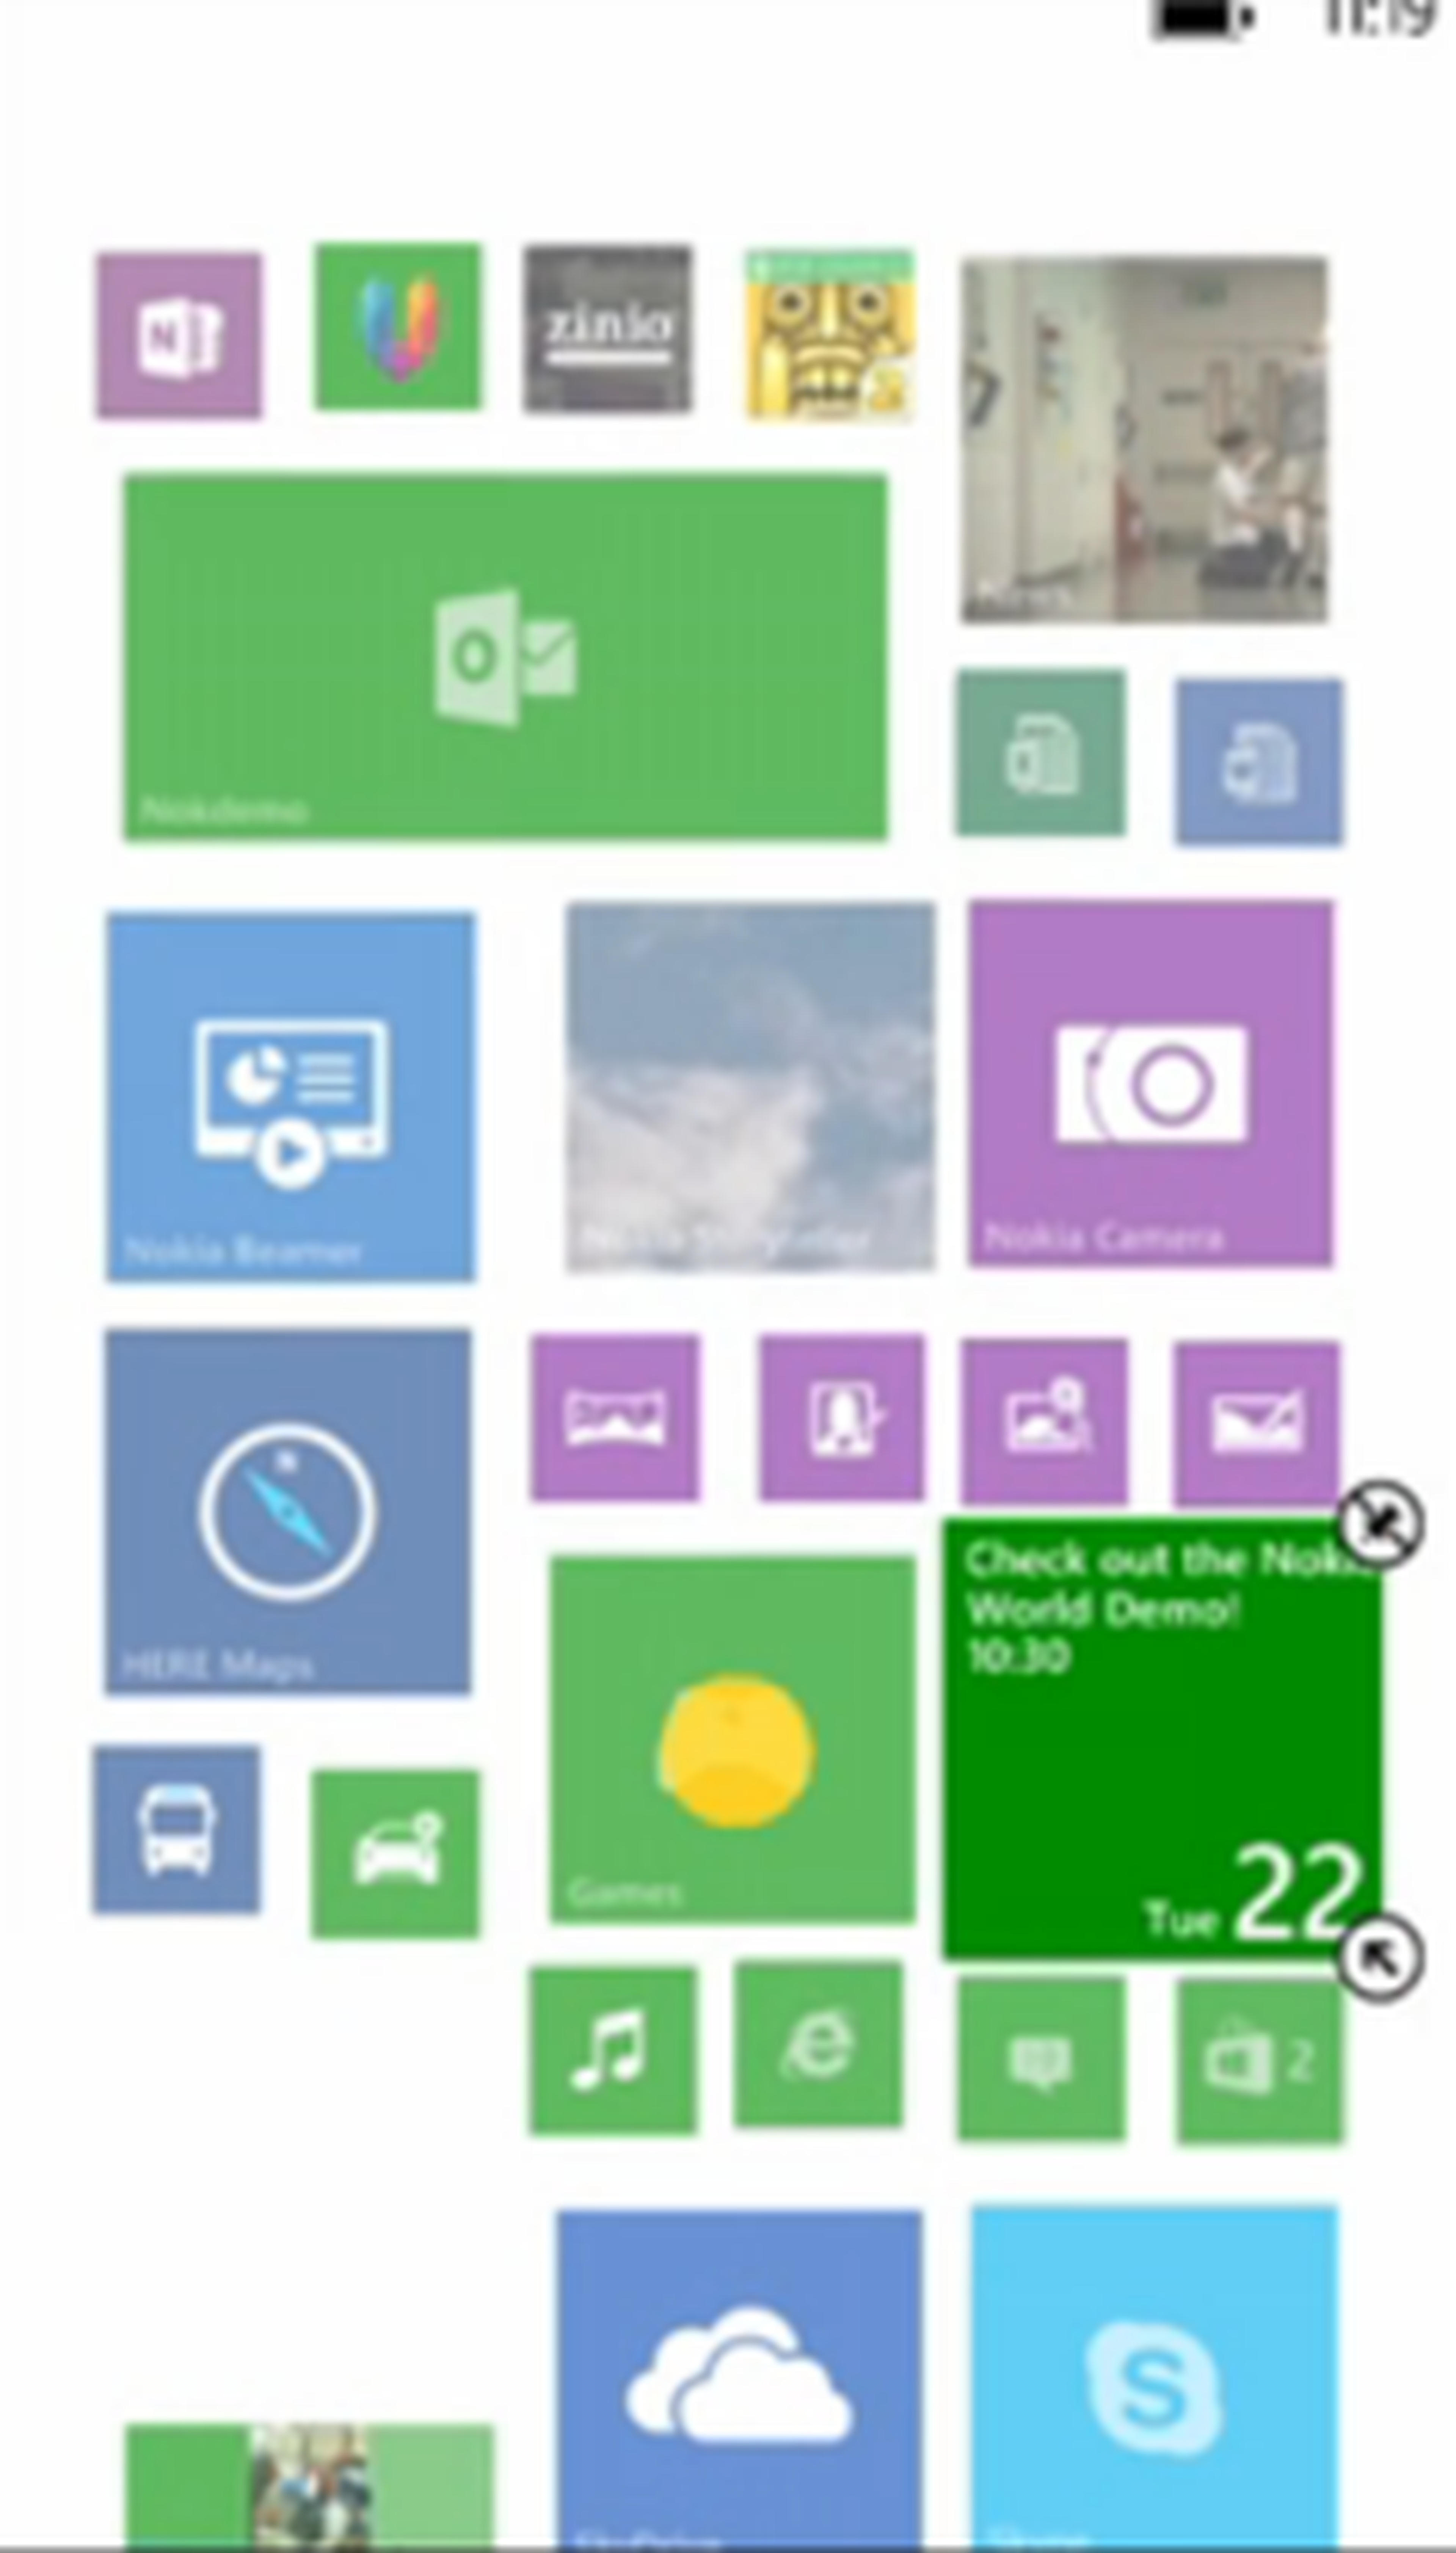 Nokia Lumia 1520 introduce una tercera columna de Live tiles en pantalla de inicio